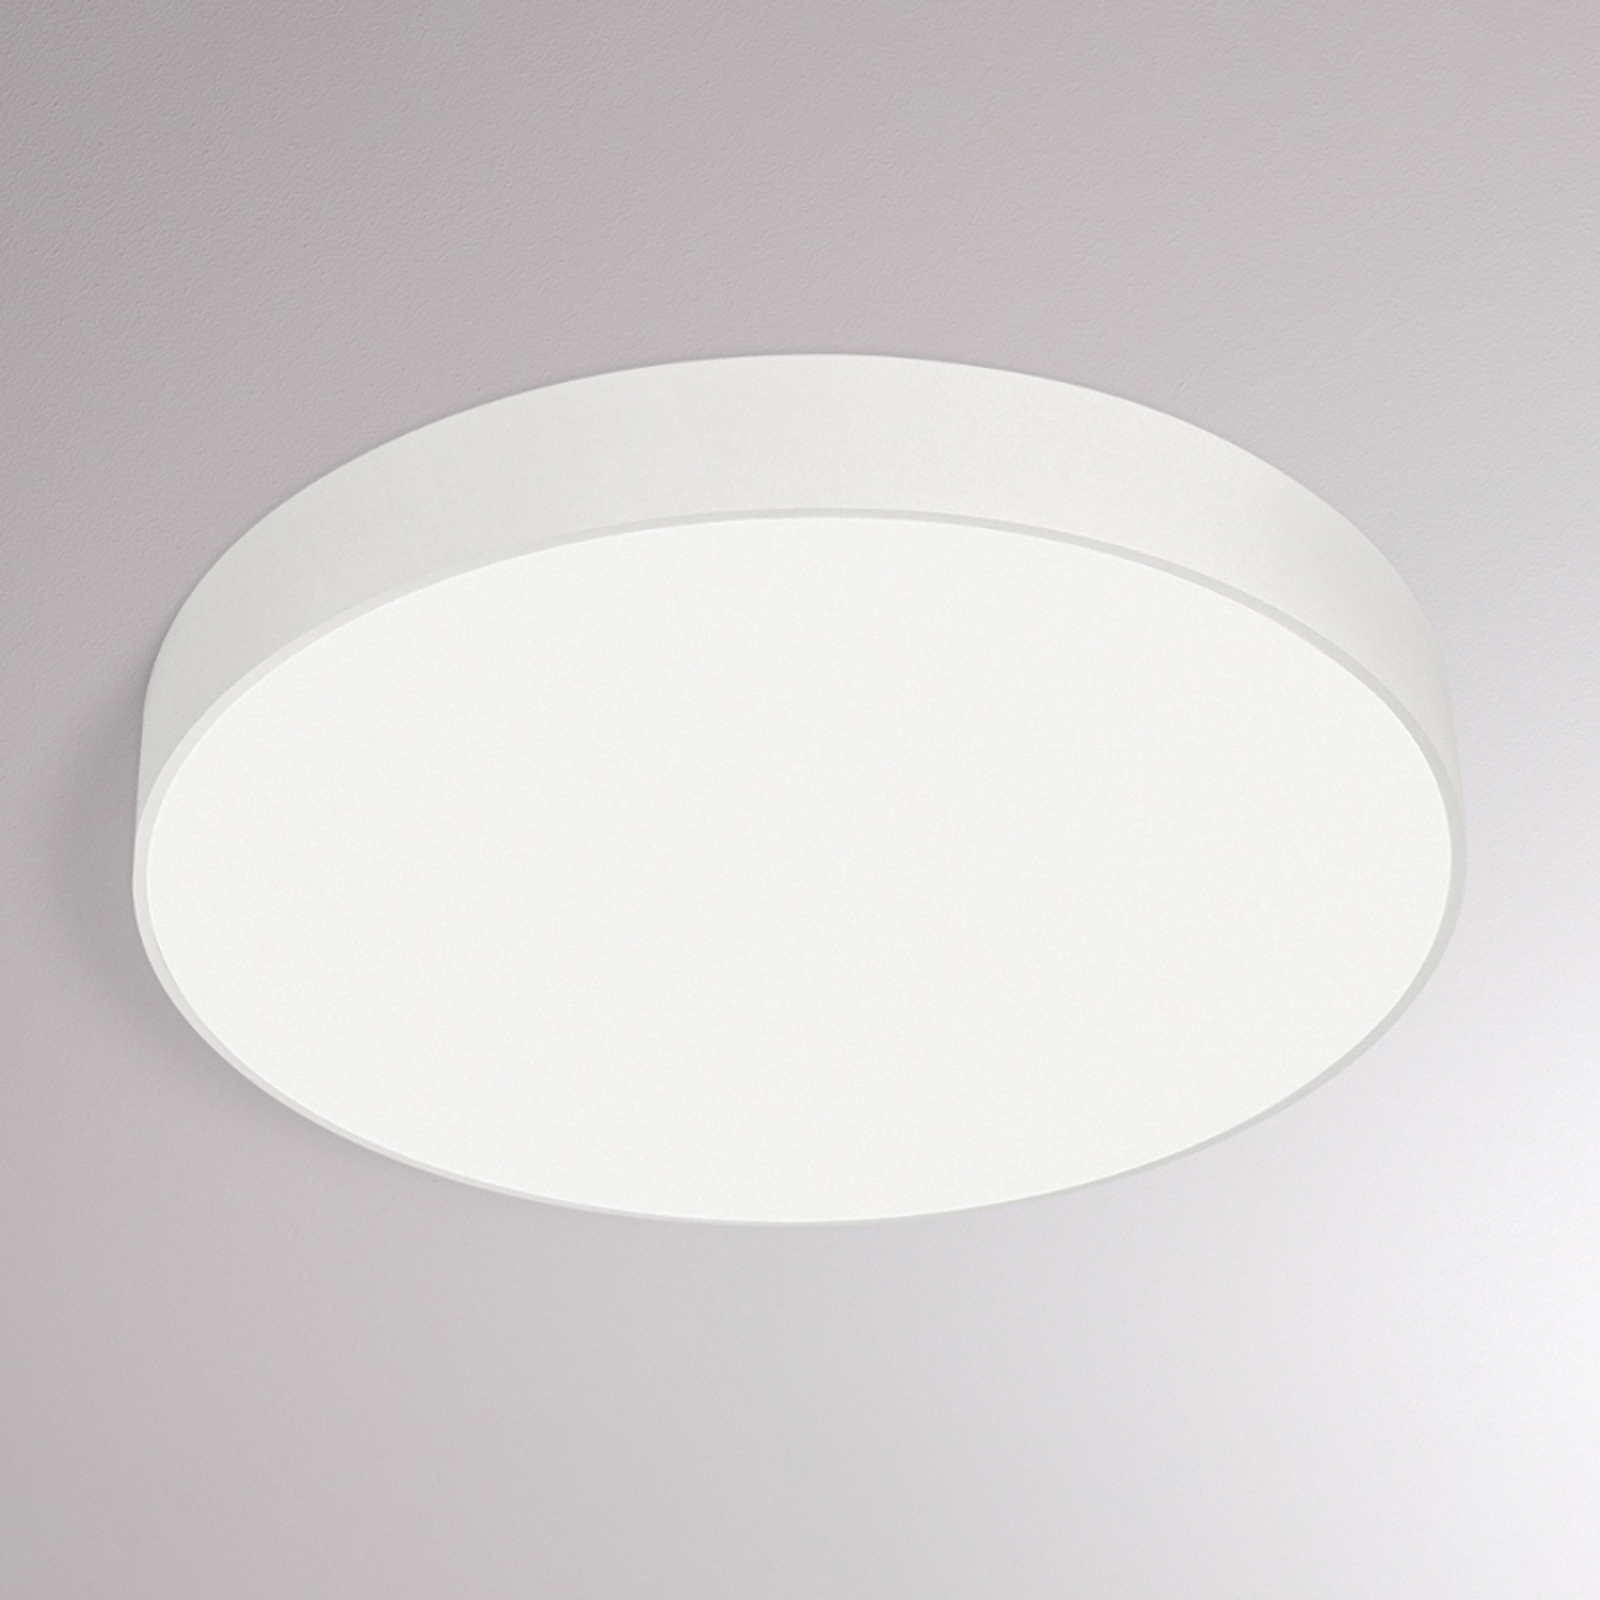 Stropní svítidlo Molto Luce Bado IP54 SD, Ø 50 cm bílé